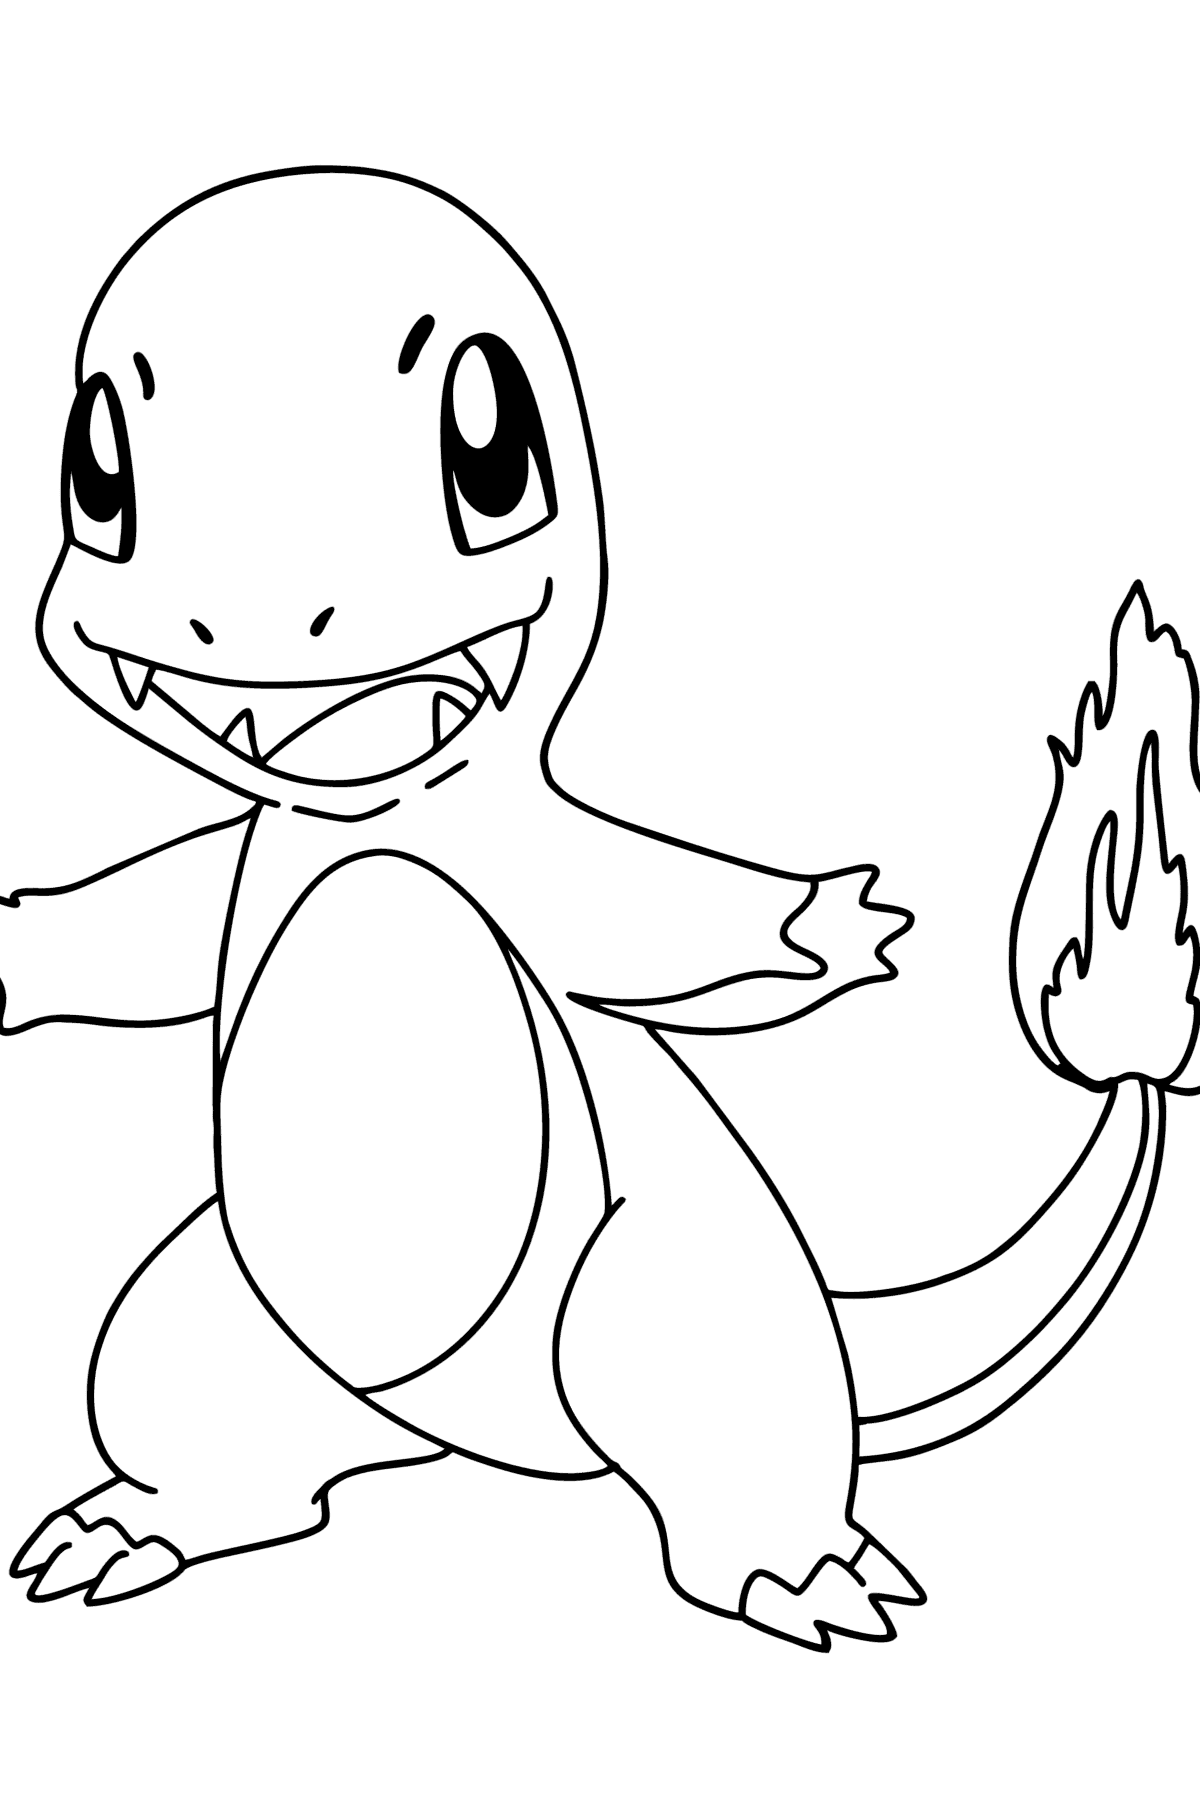 Tegning til fargelegging Pokémon Go Charmander - Tegninger til fargelegging for barn